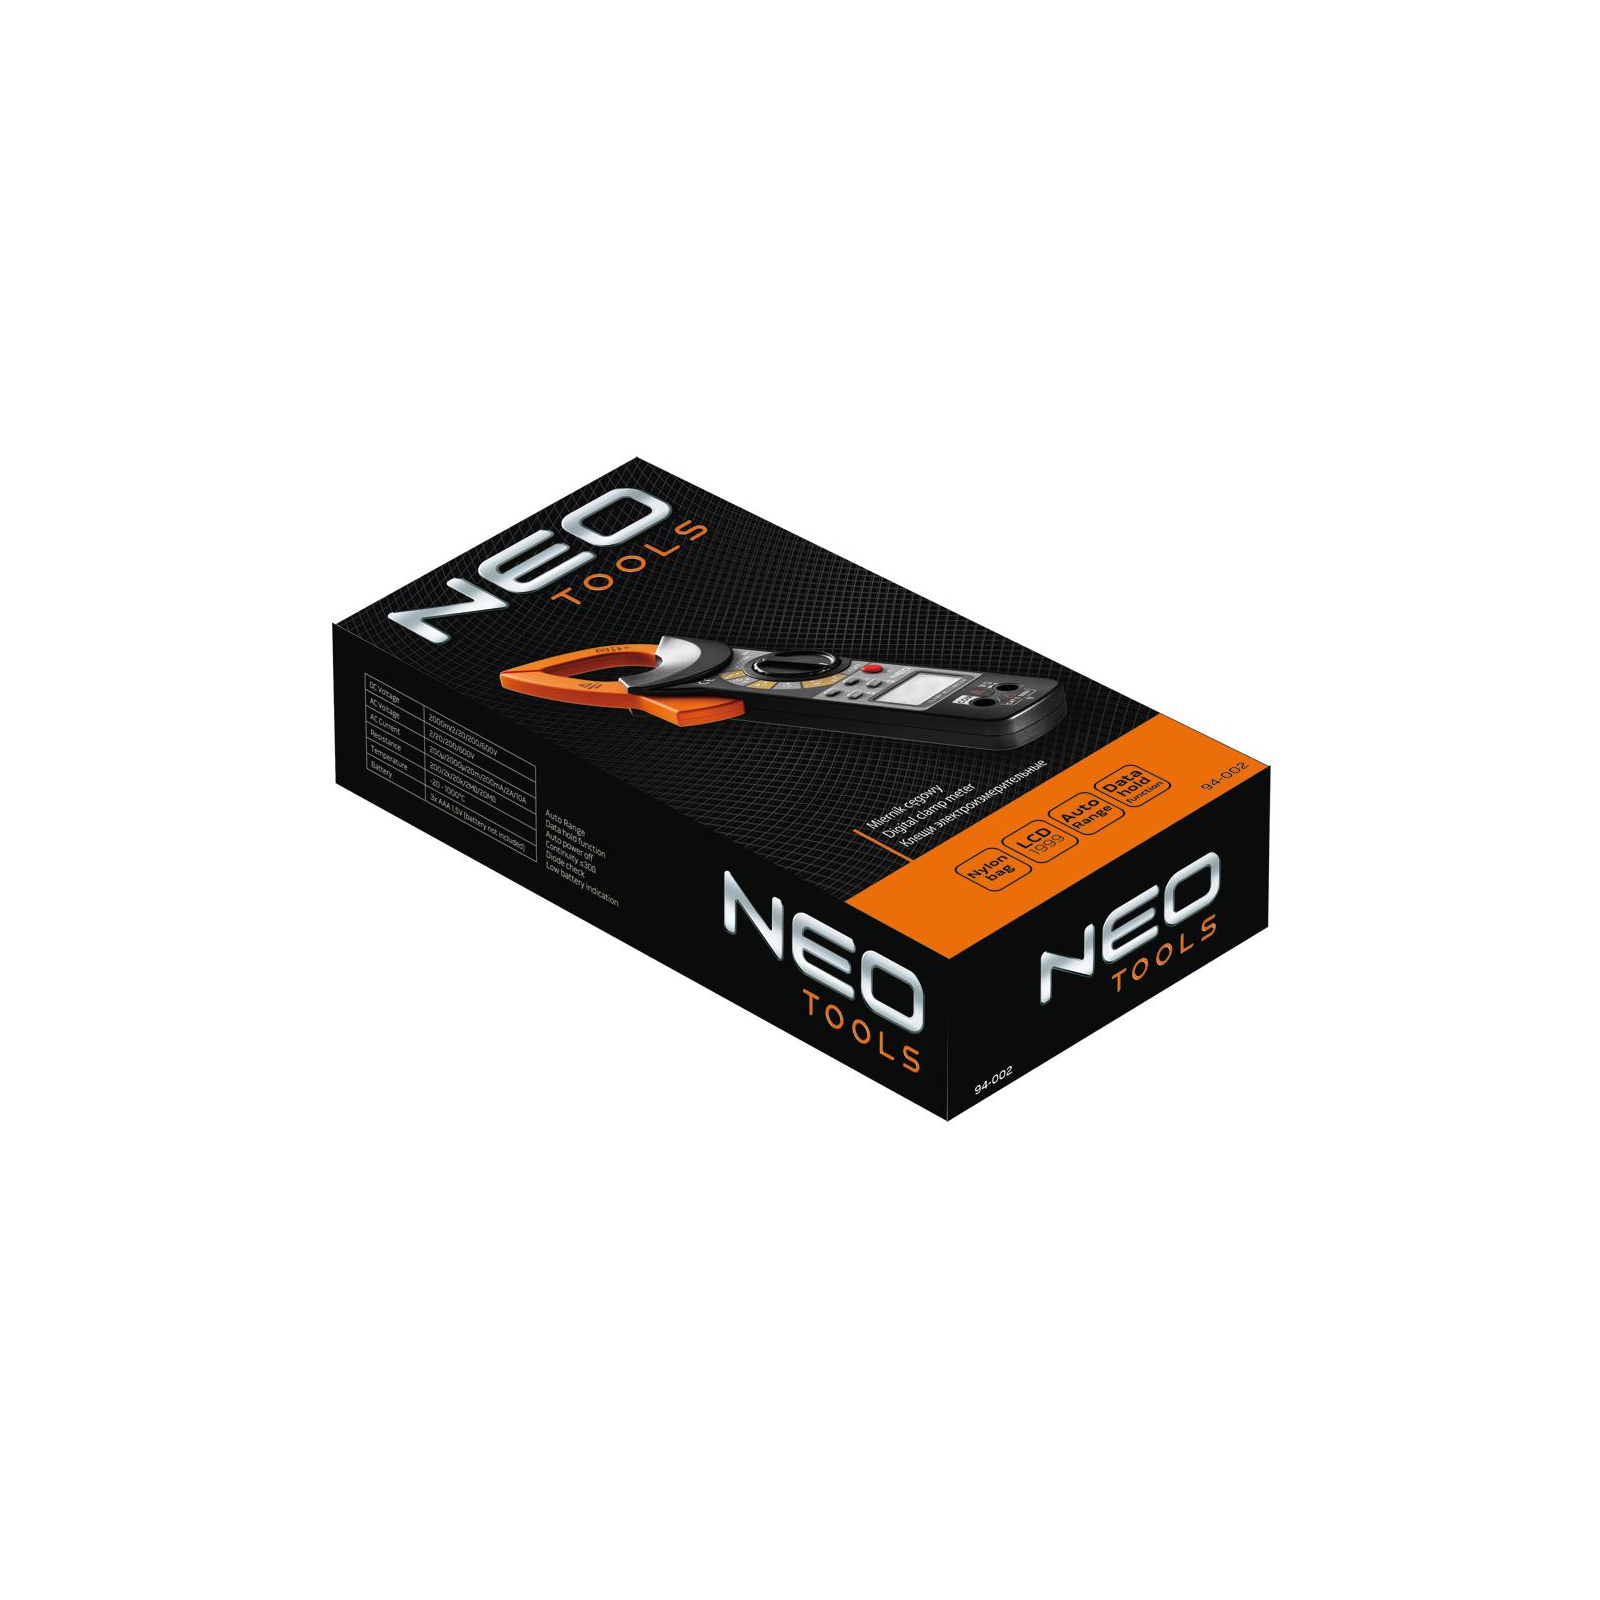 Токовые клещи Neo Tools 94-002 изображение 3